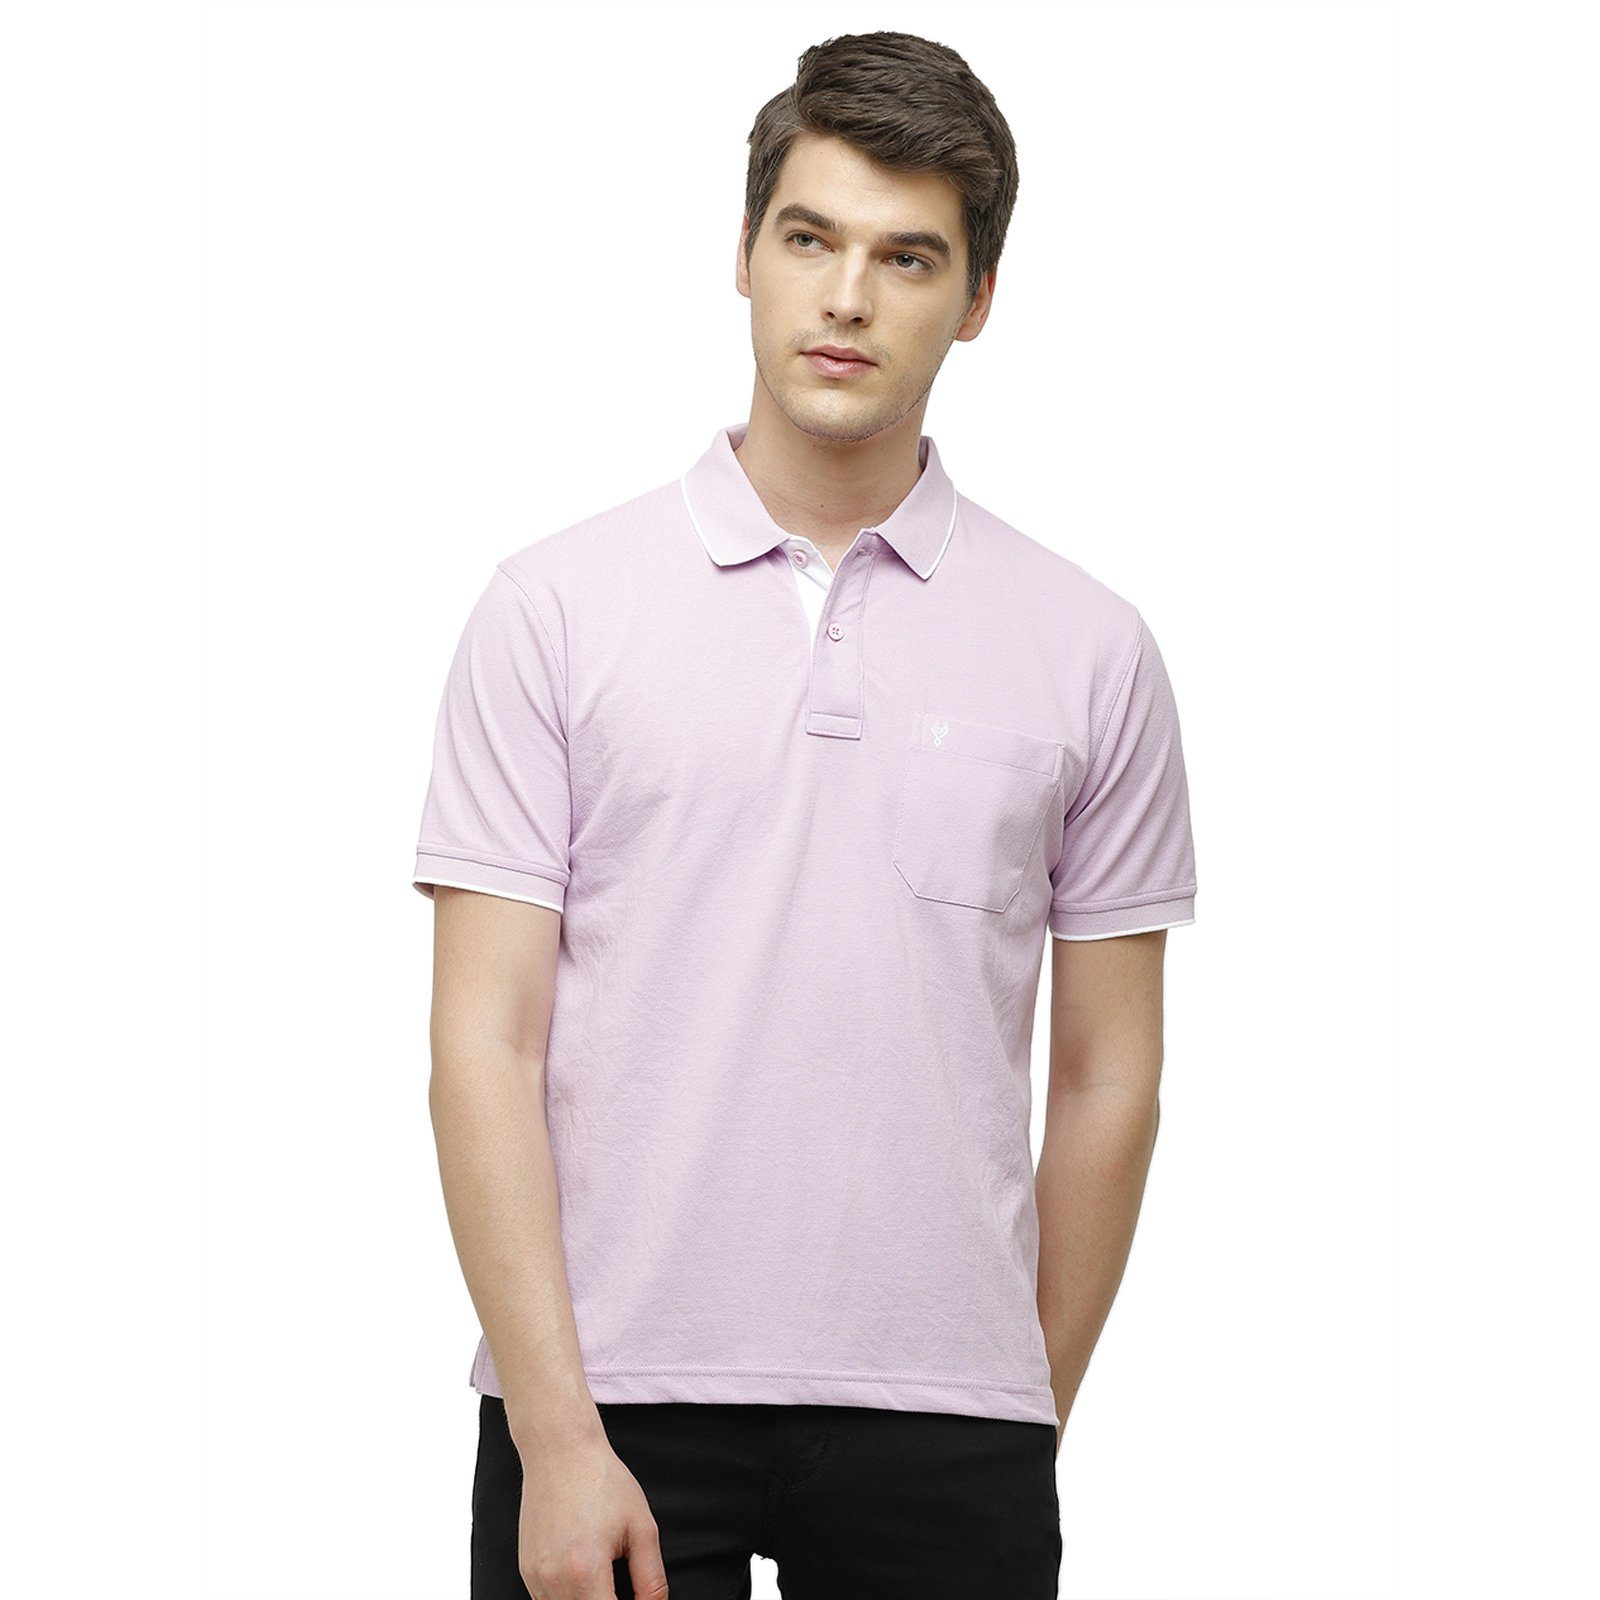 Classic polo Men's Lavender Smart Double Pique Polo Half Sleeve Authentic Fit T-Shirt Nova - Lavender T-shirt Classic Polo 